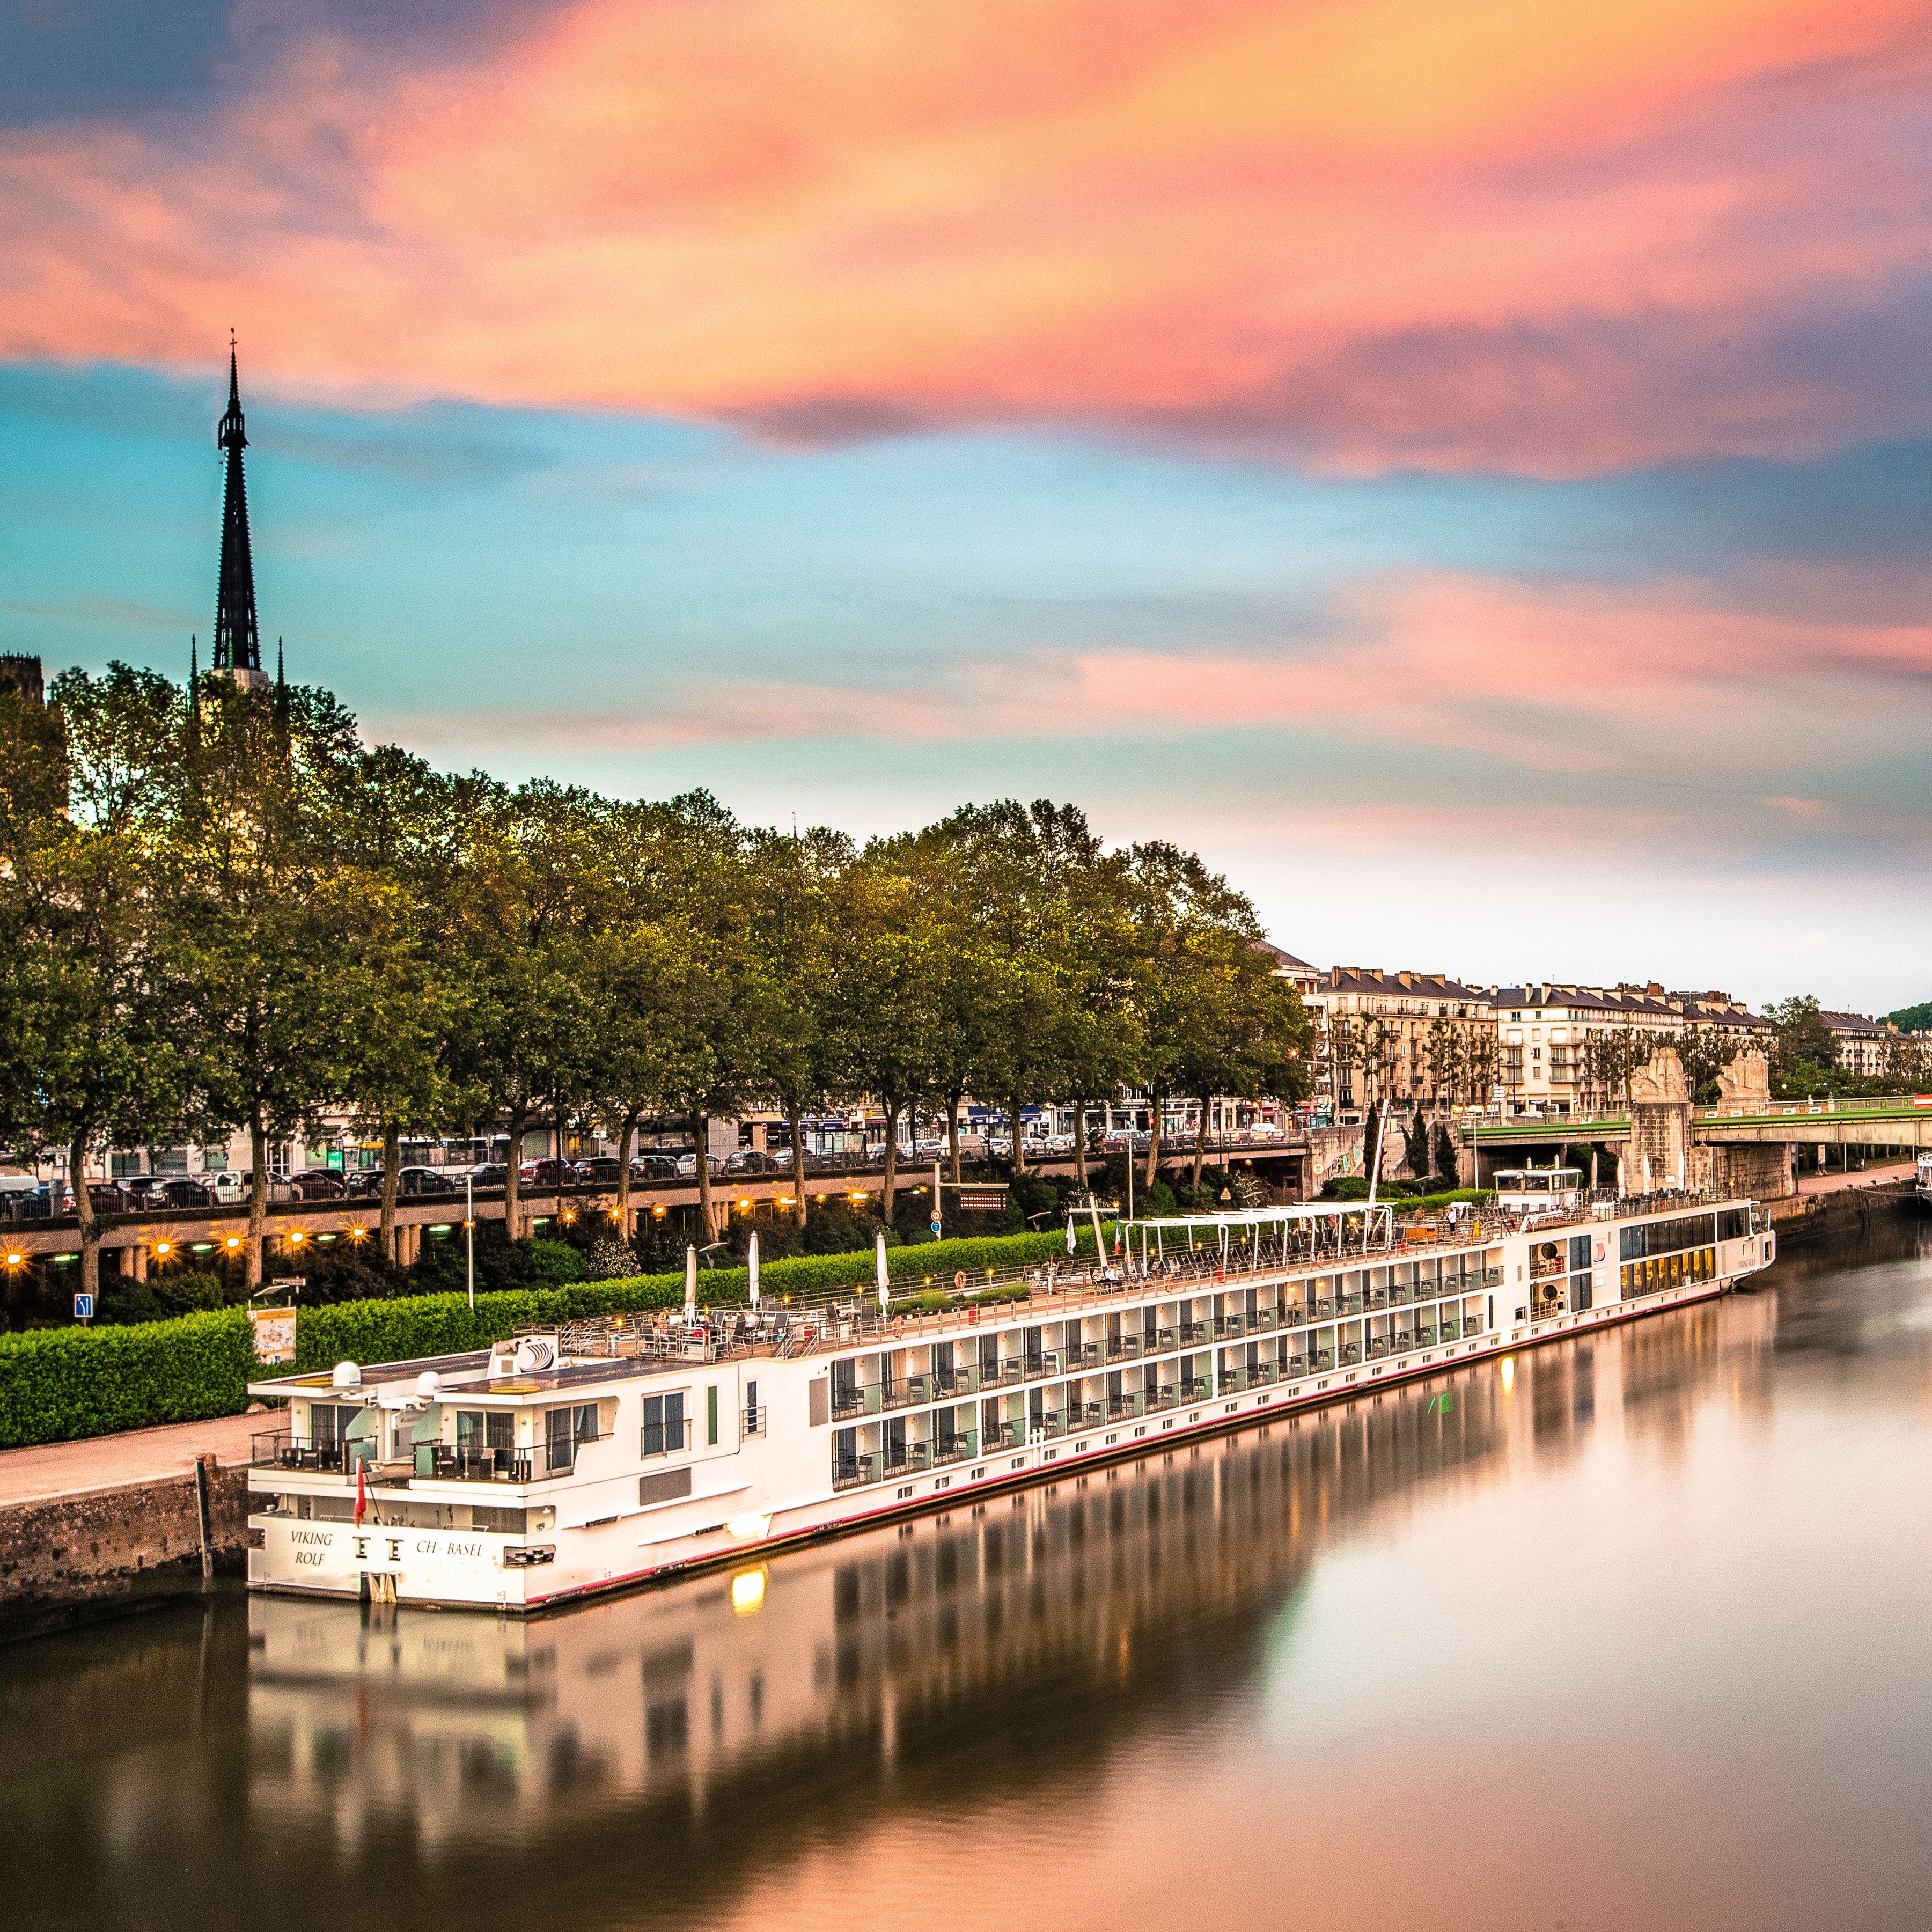 Le seine. Река сена во Франции. Река сена в Париже. Река Сенна. Исток реки сена.